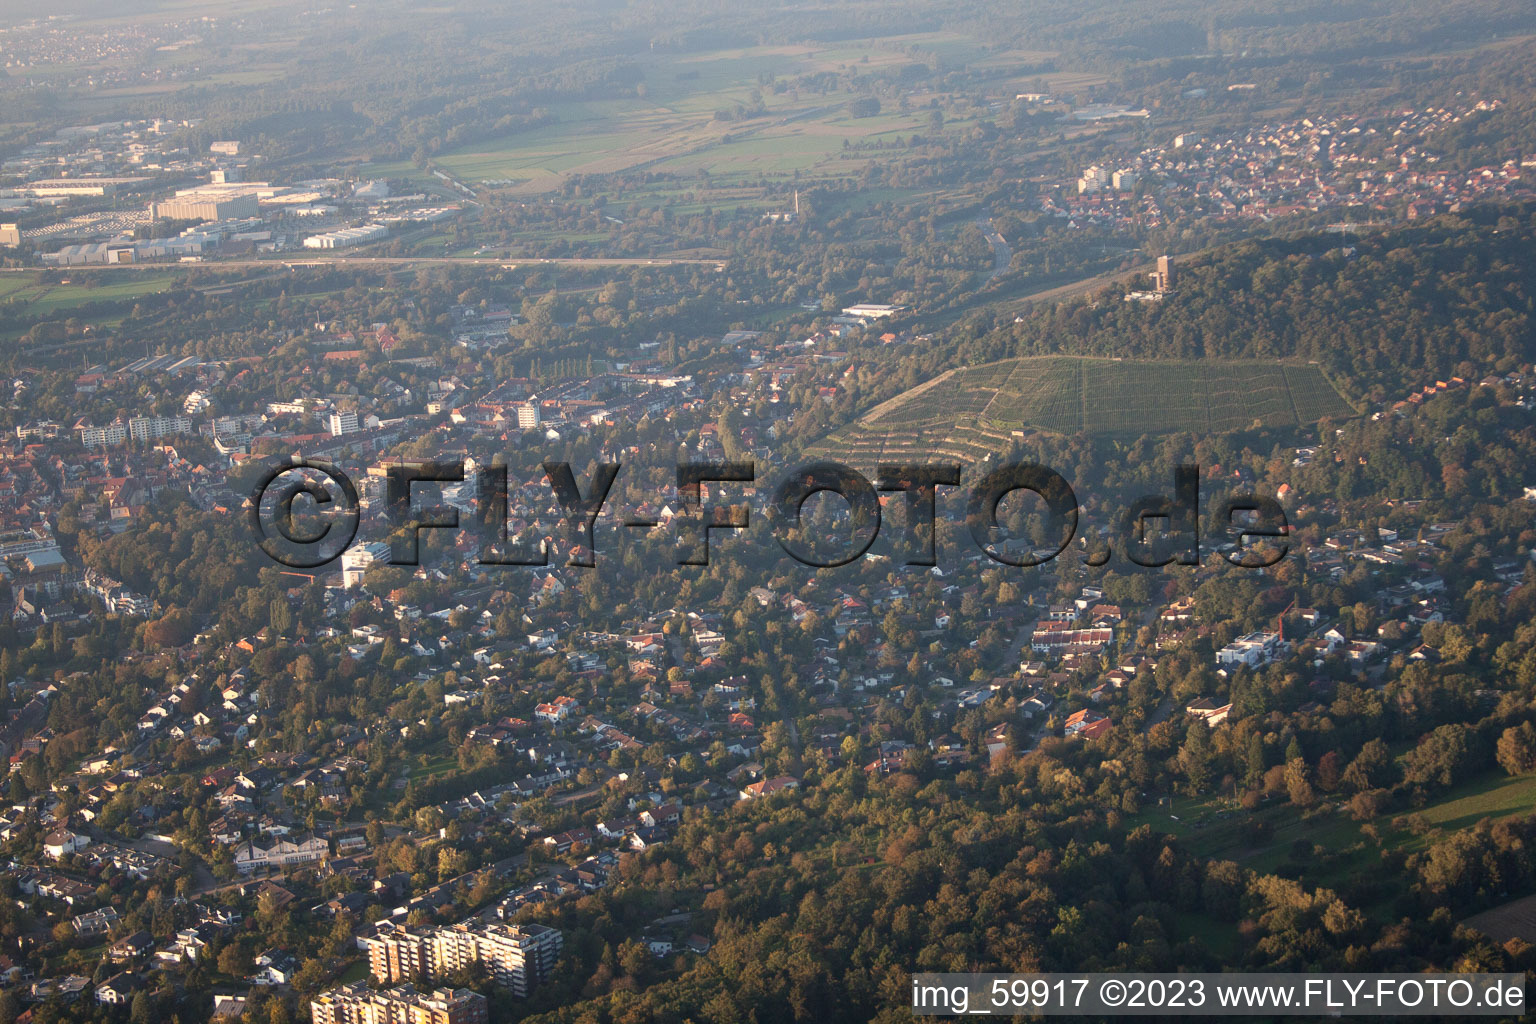 Montagne de la Tour à le quartier Durlach in Karlsruhe dans le département Bade-Wurtemberg, Allemagne vue d'en haut